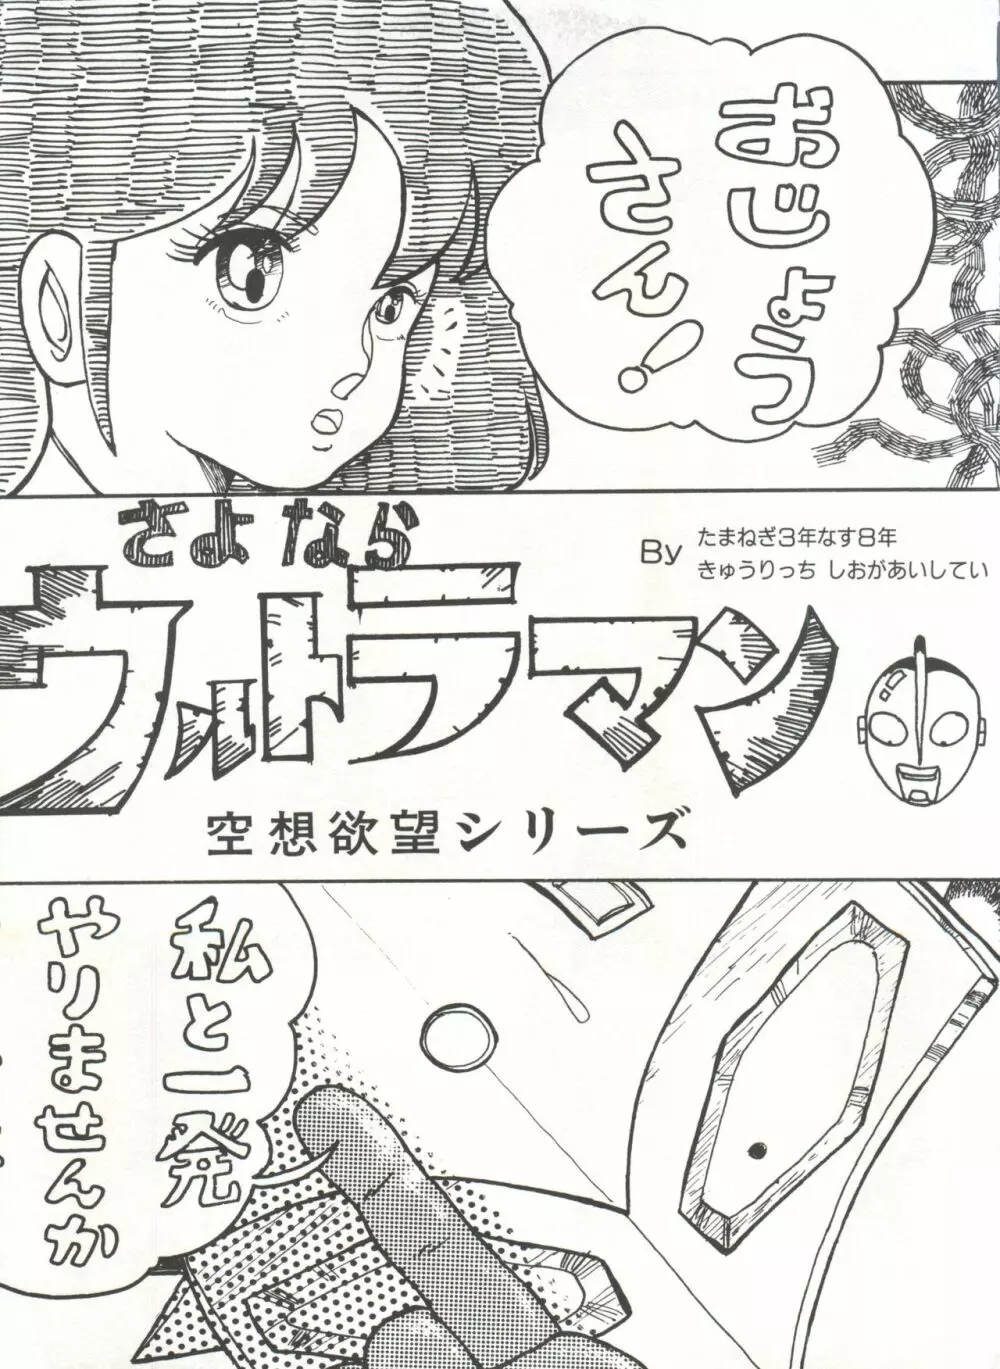 [Anthology] 美少女症候群(2) Lolita syndrome (よろず) 92ページ